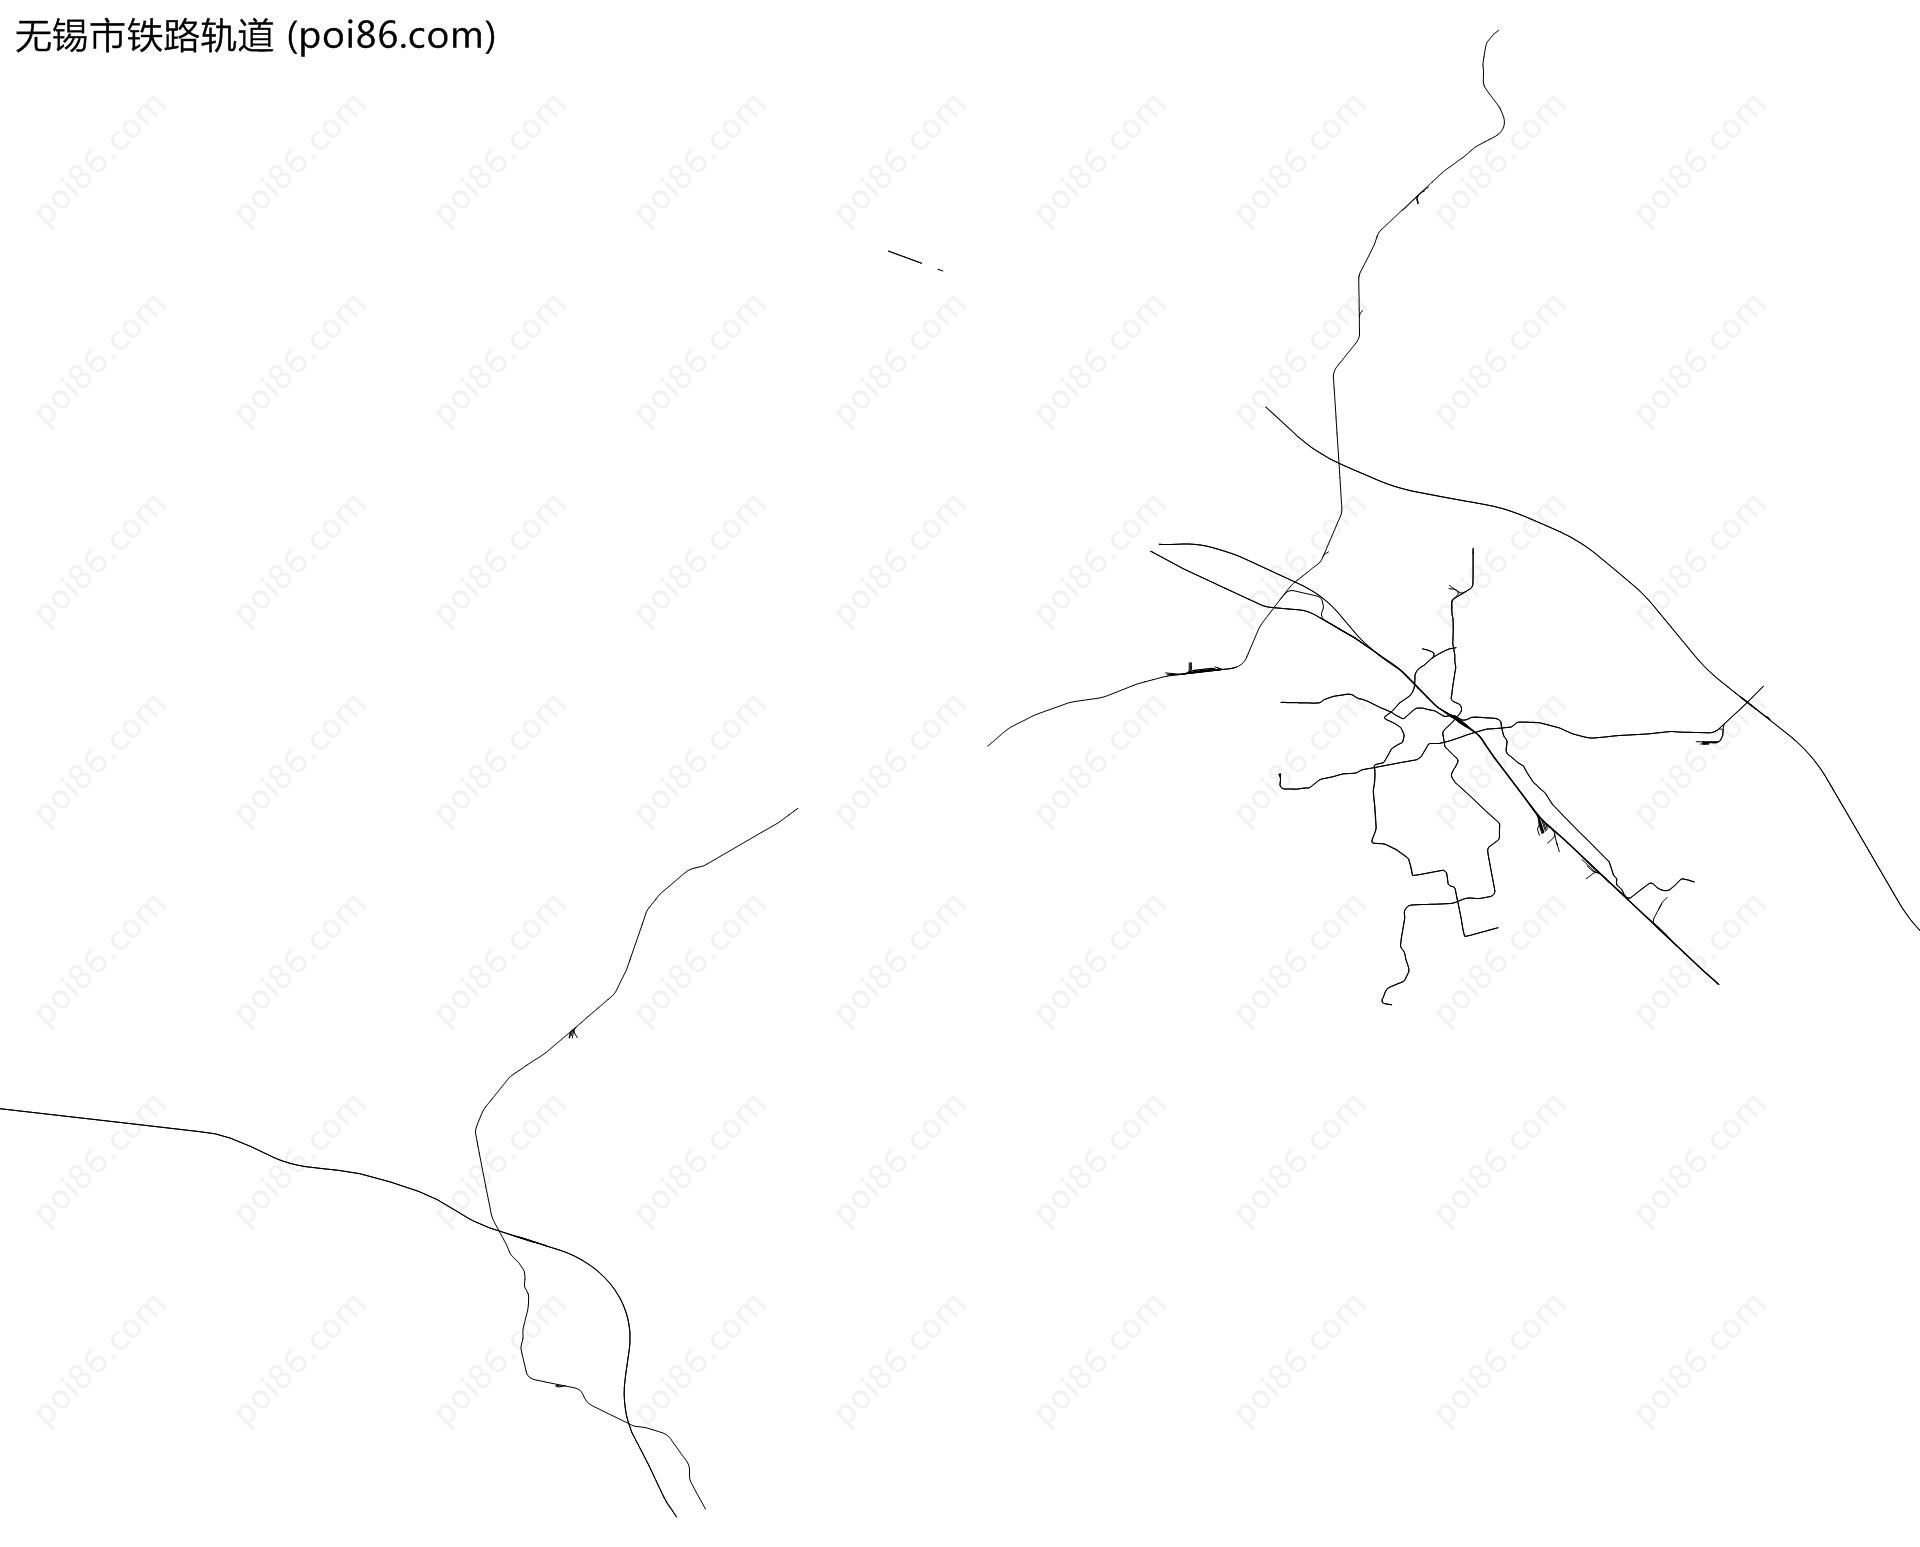 无锡市铁路轨道地图